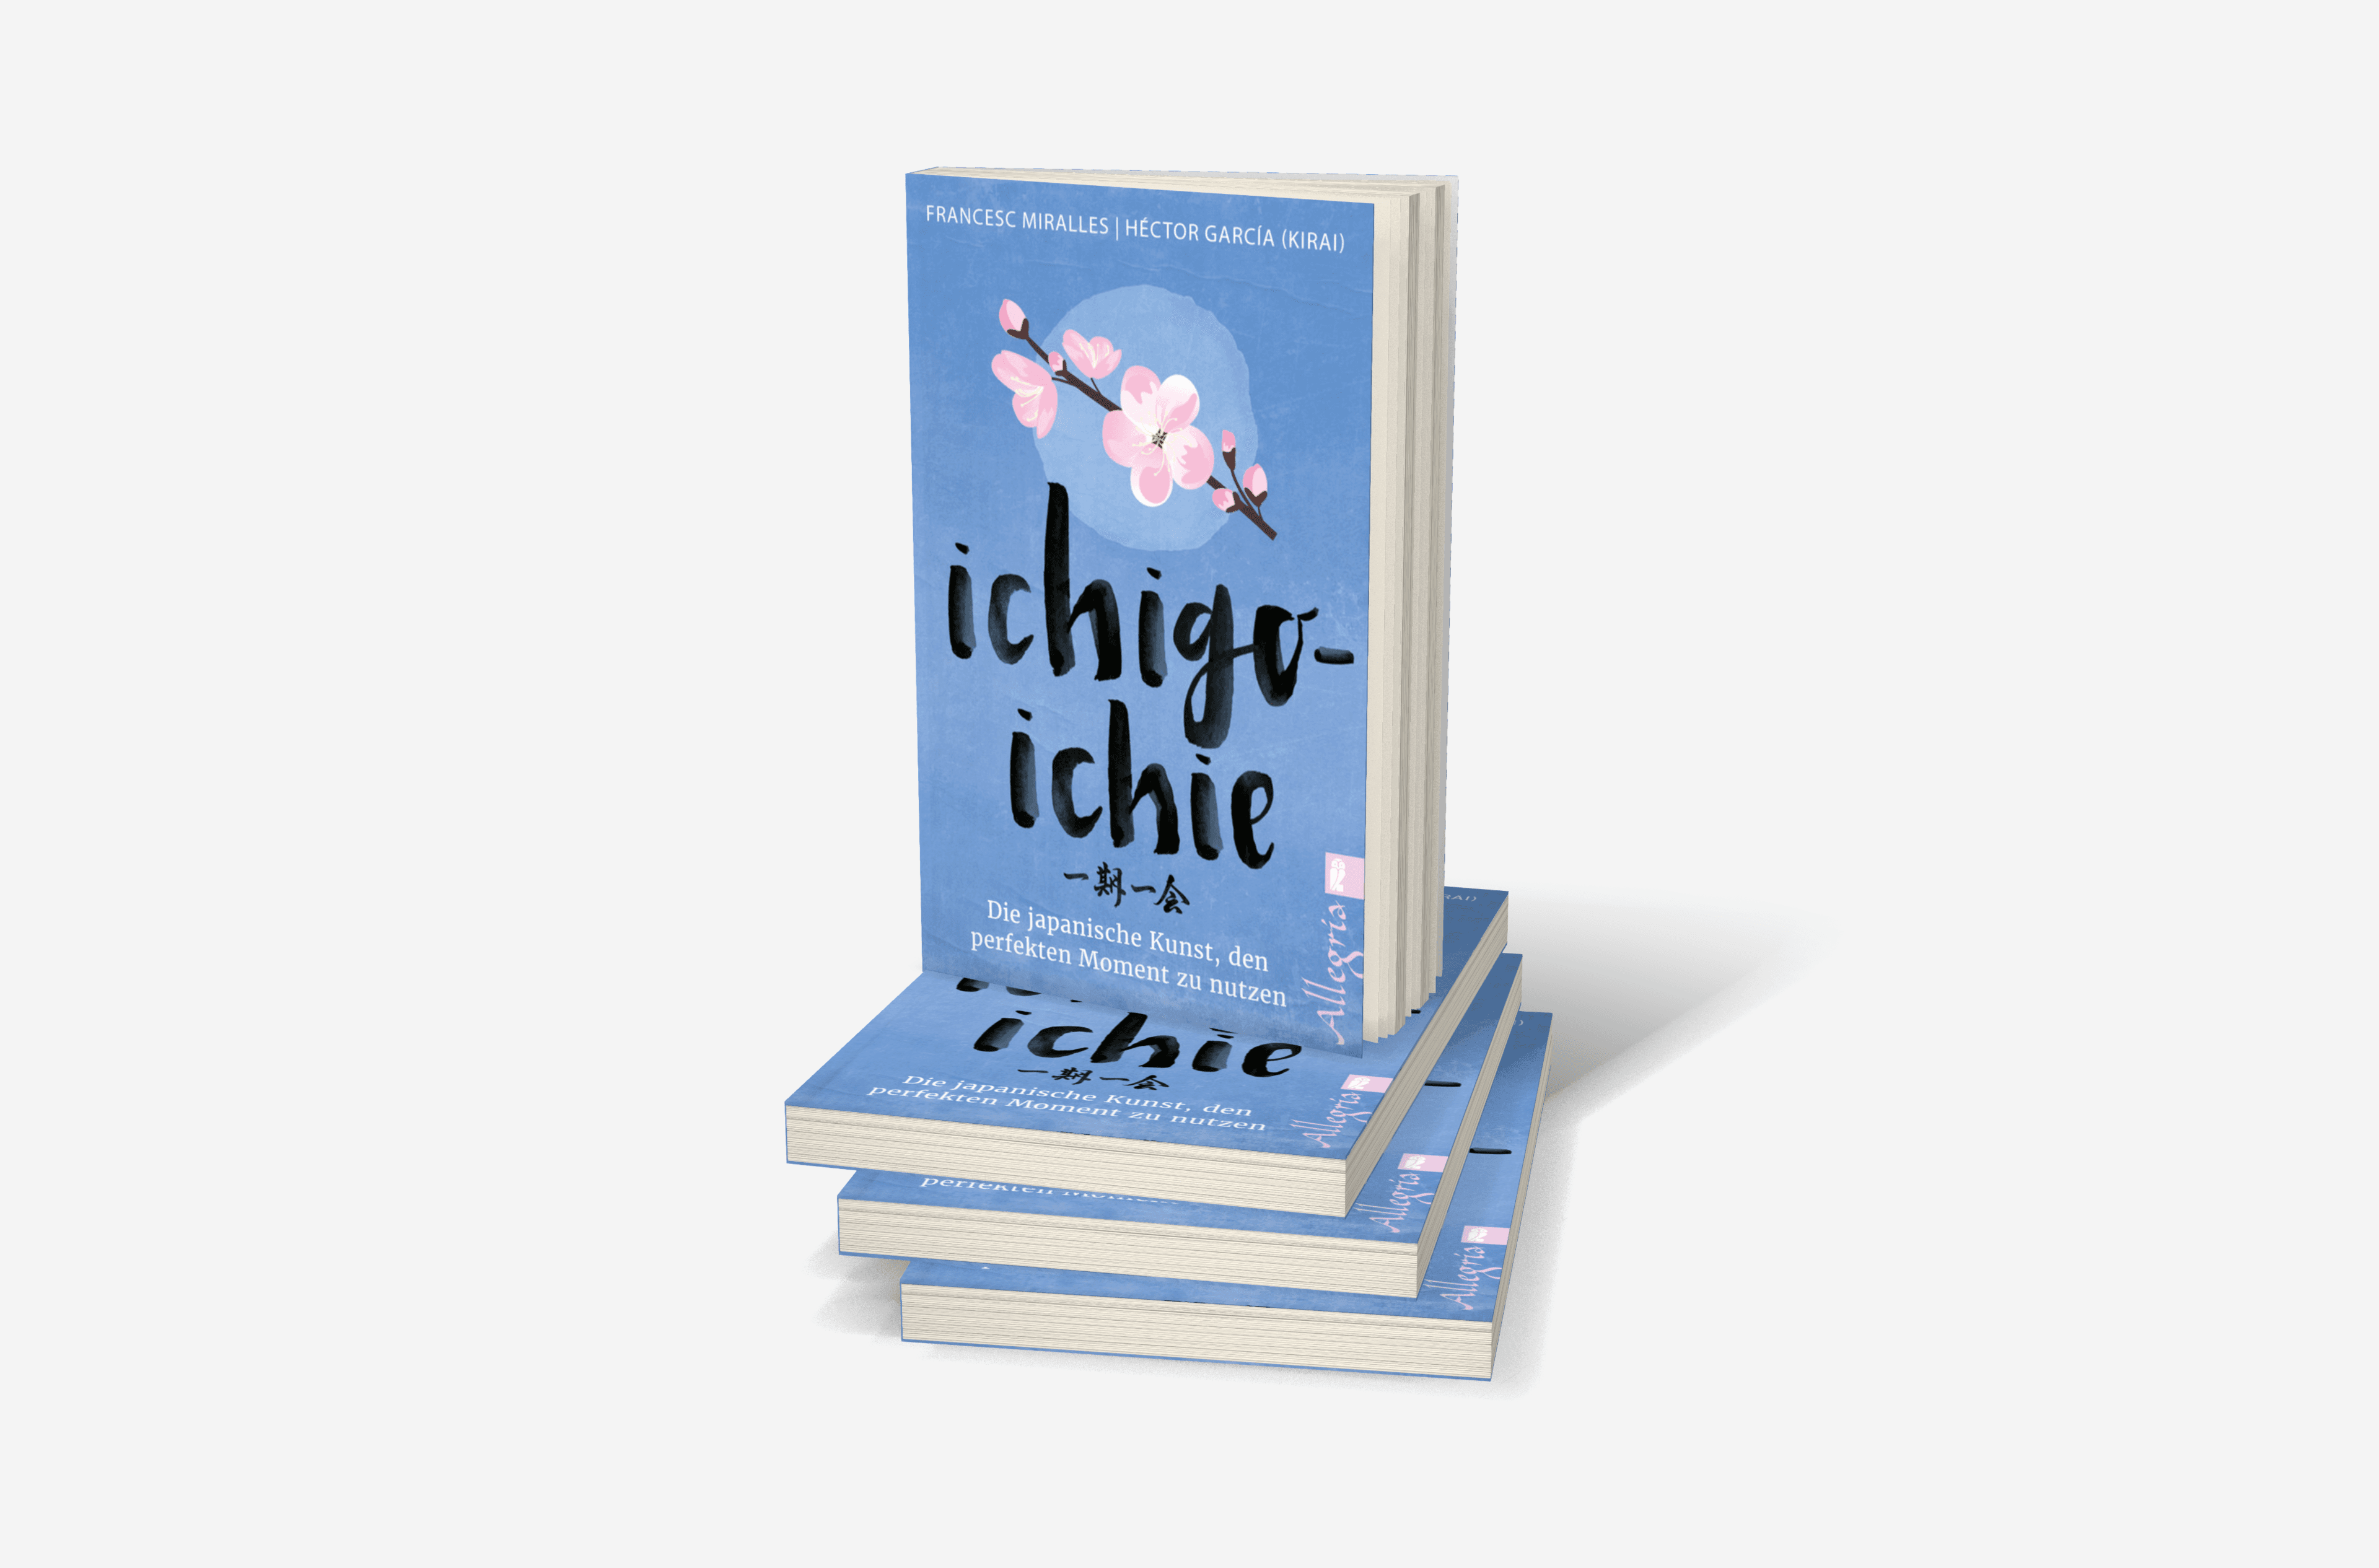 Buchcover von Ichigo-ichie